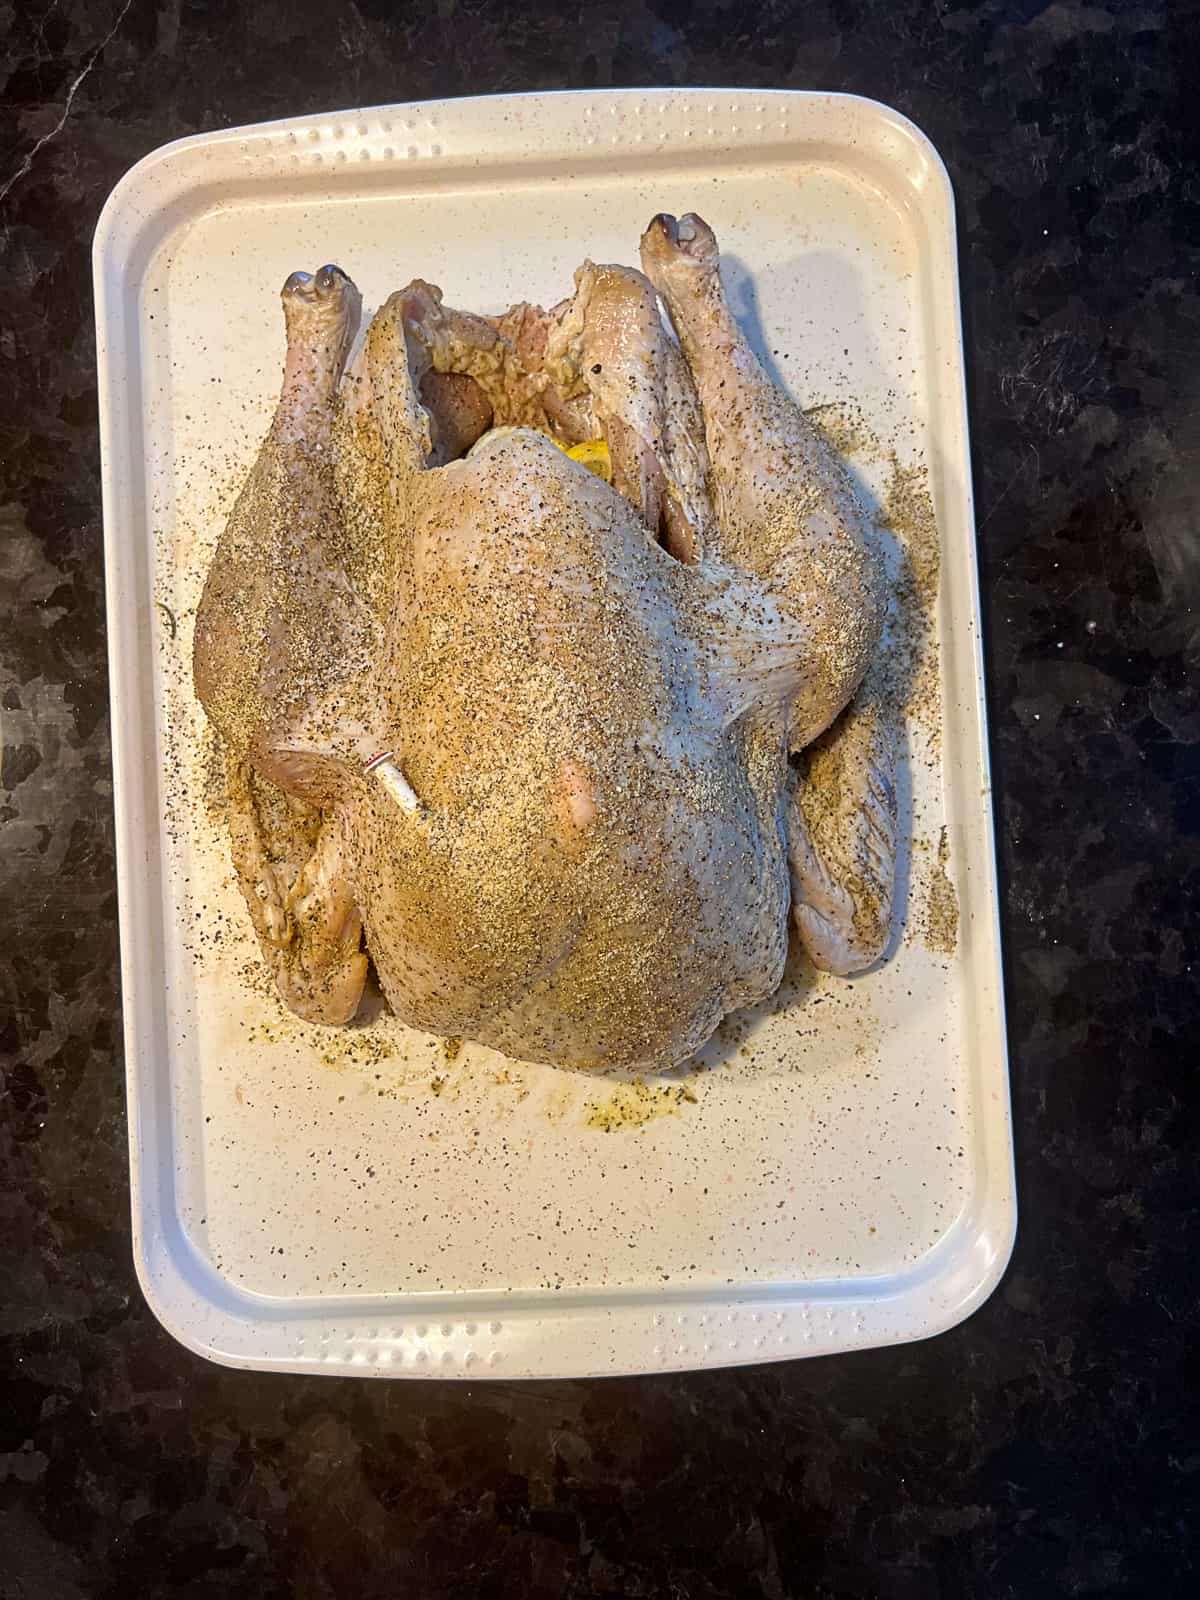 Whole Turkey Seasoned on a tray